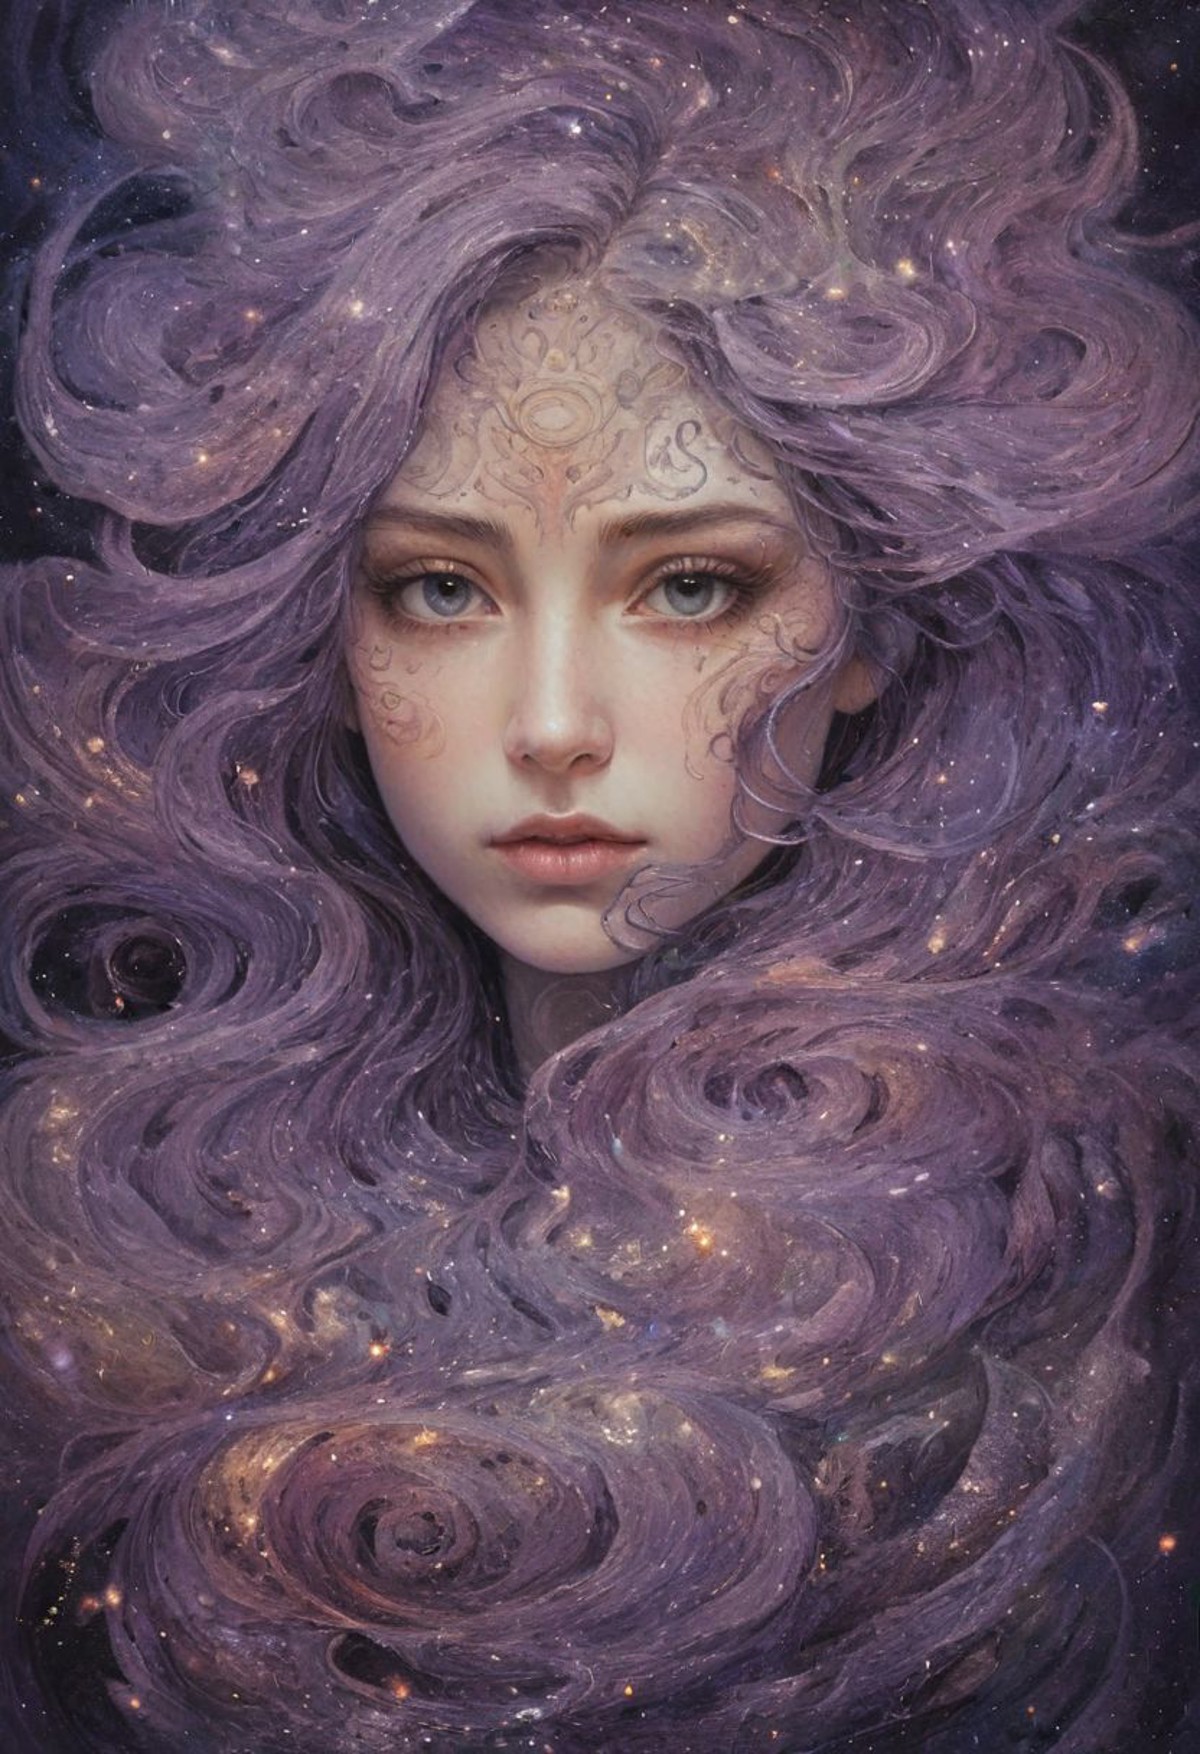 celestial being woman's portrait with dark purple eyes, swirling galaxies, nebulae, intricate cosmic details, cosmic eyes,...